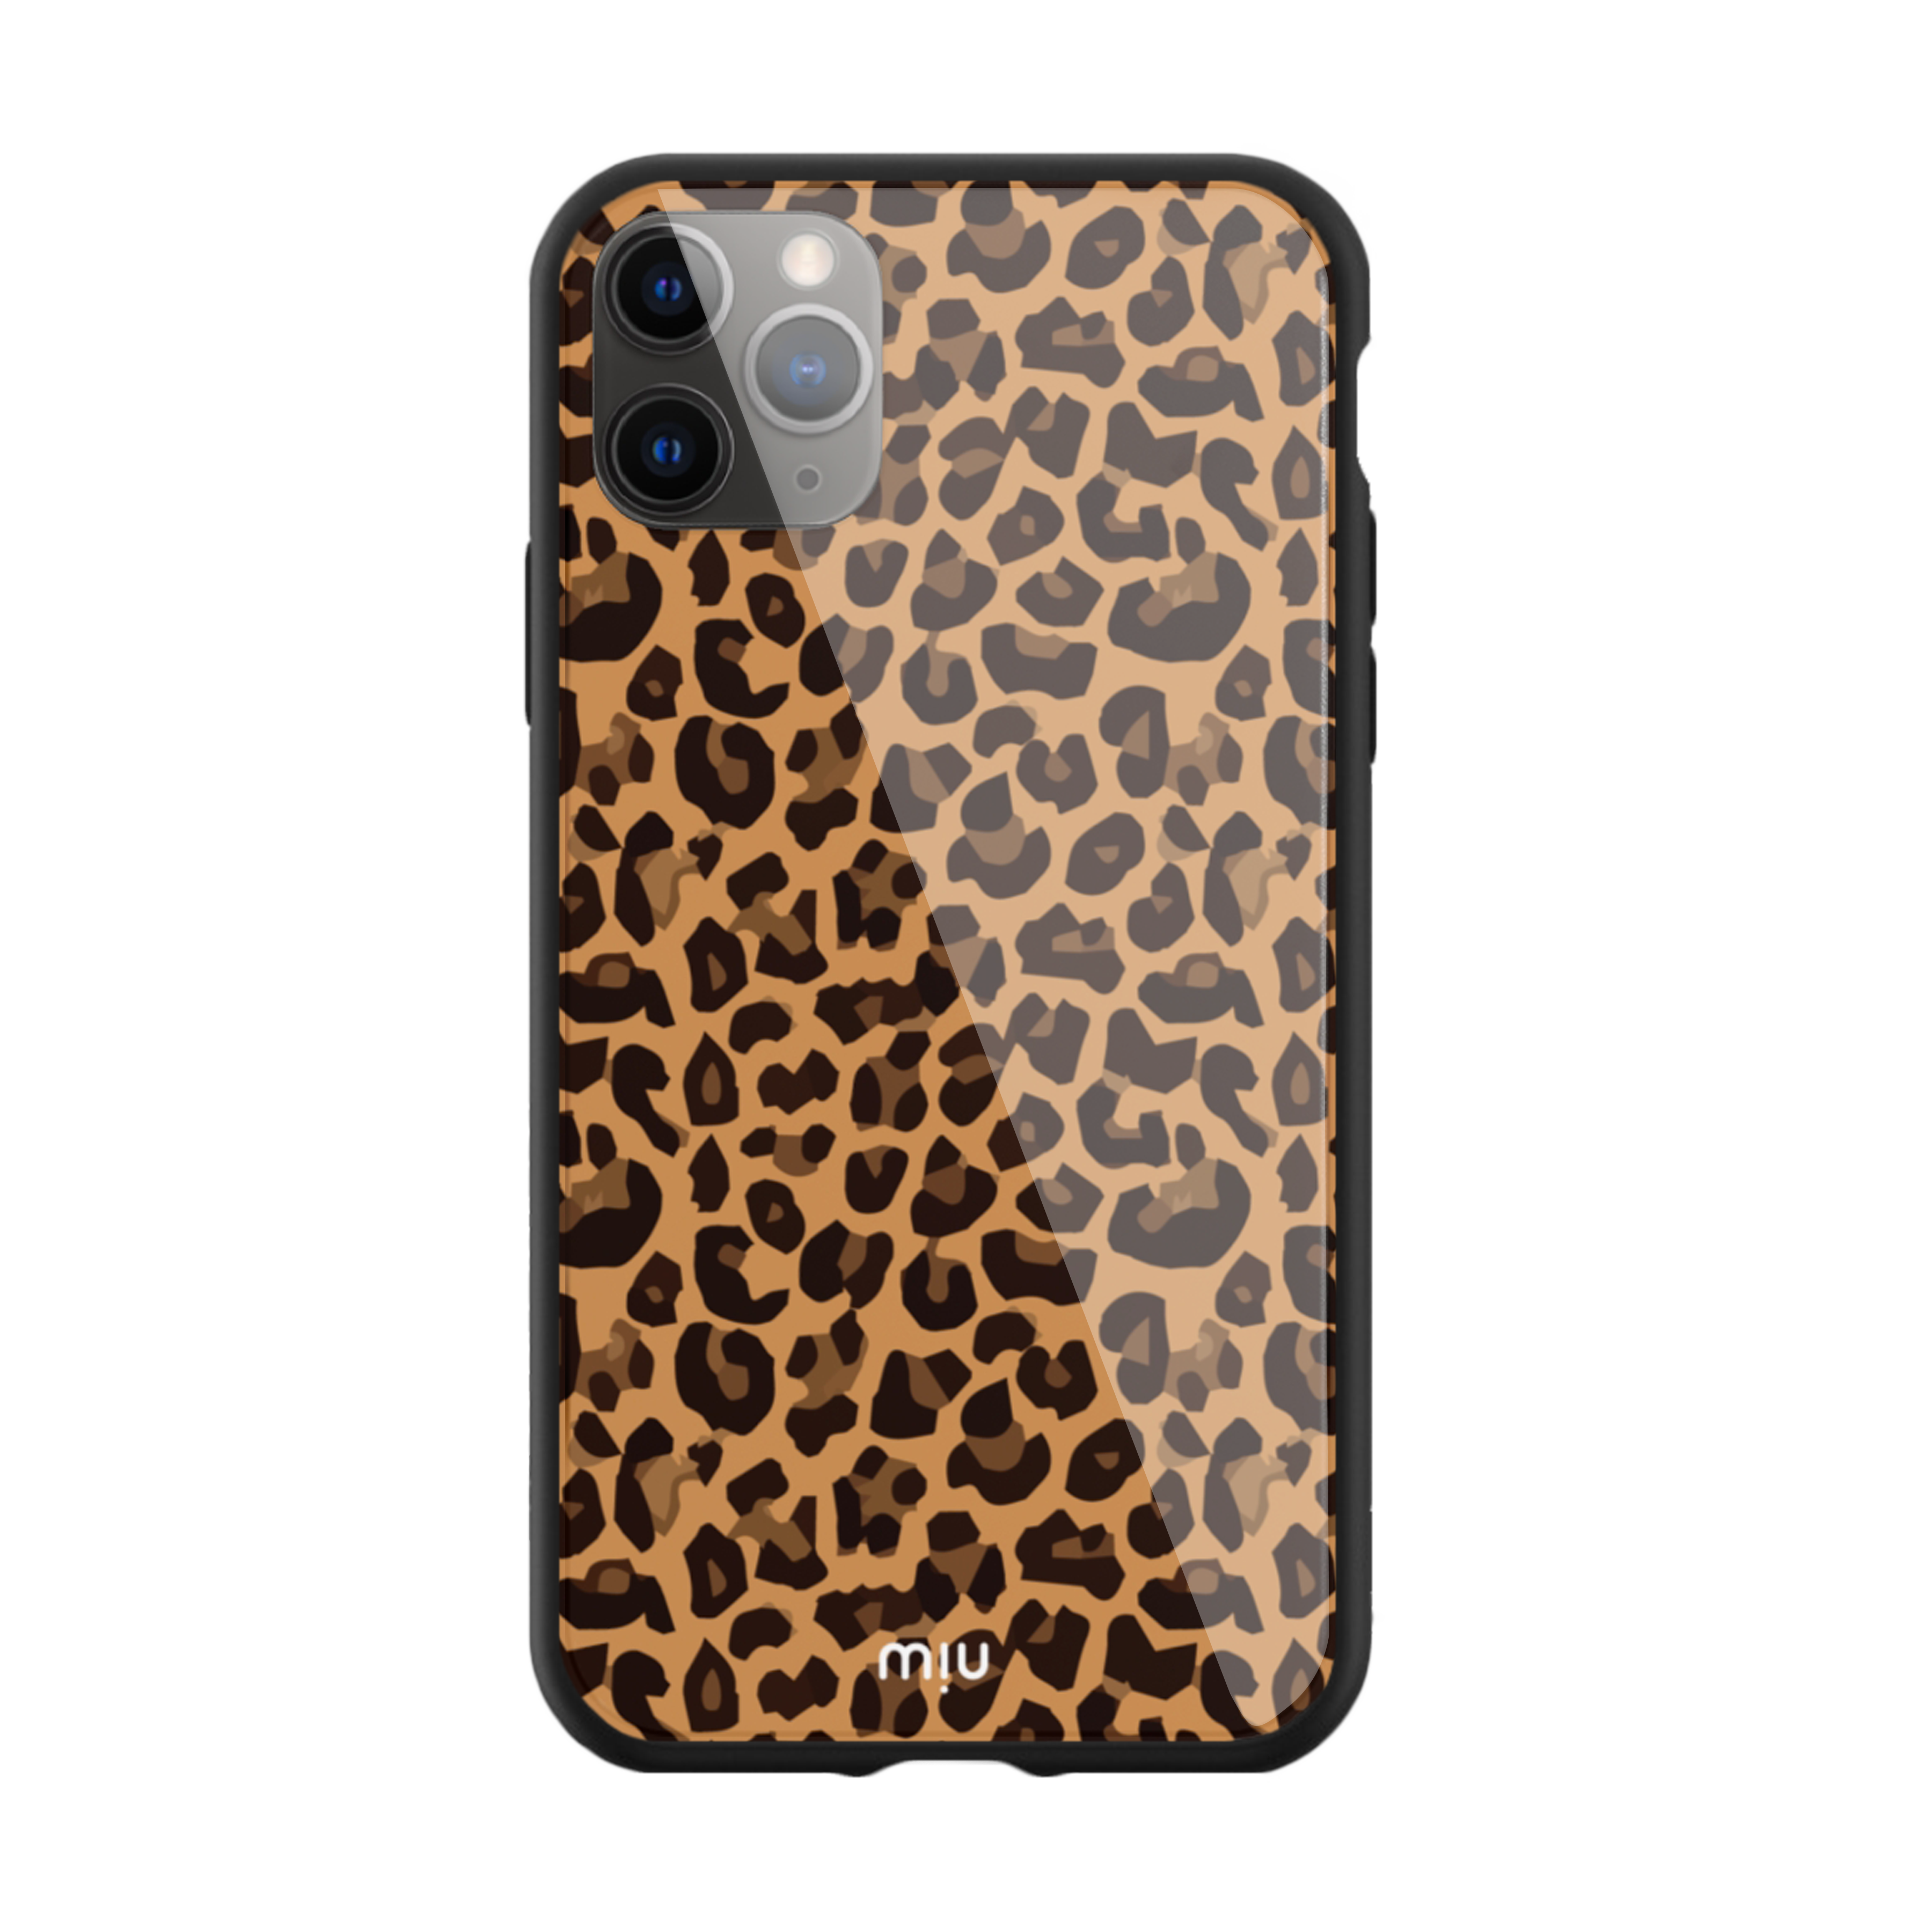 The Leopard Skin Pattern